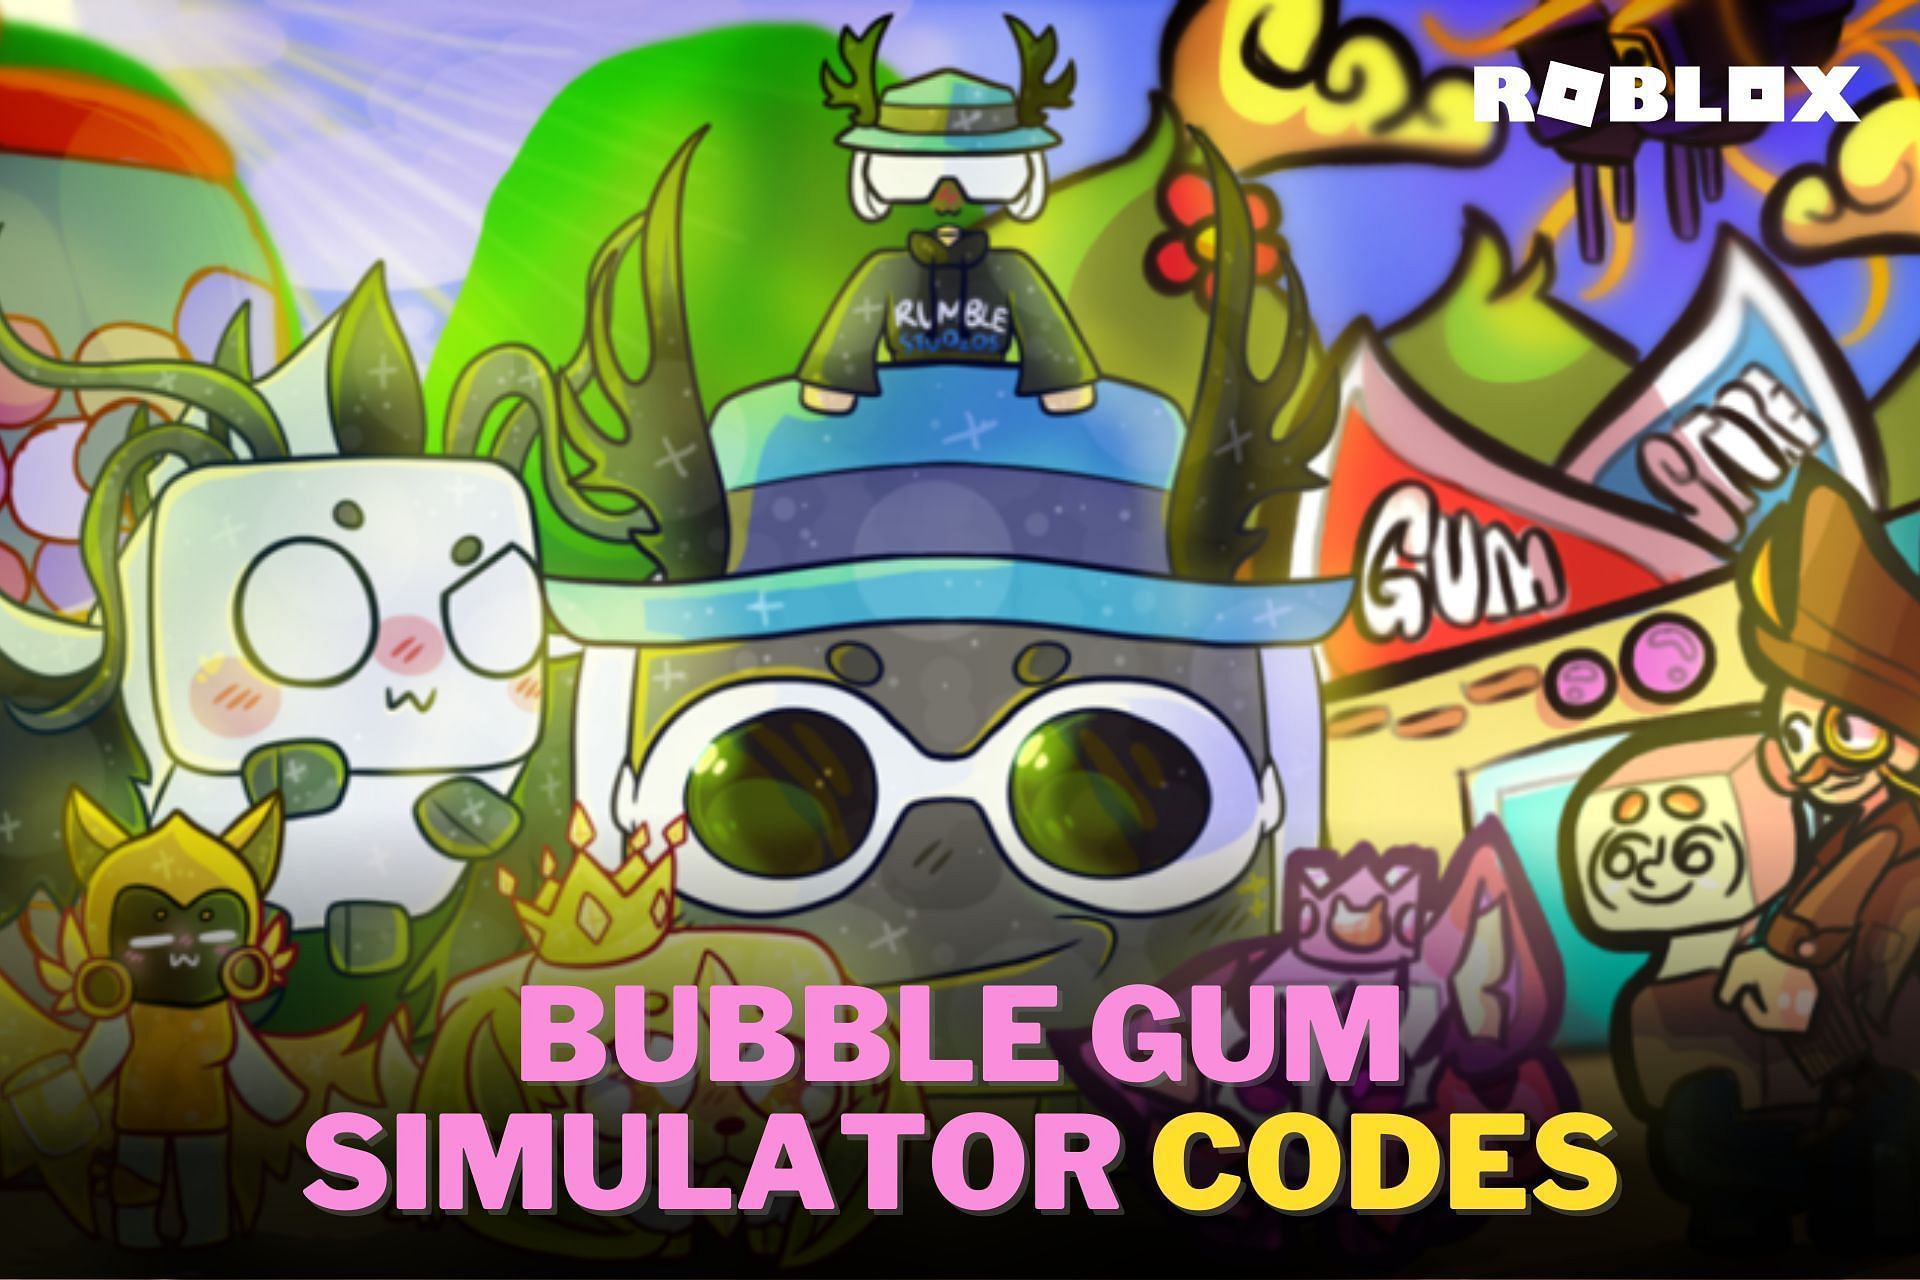 All bubble gum simulator codes